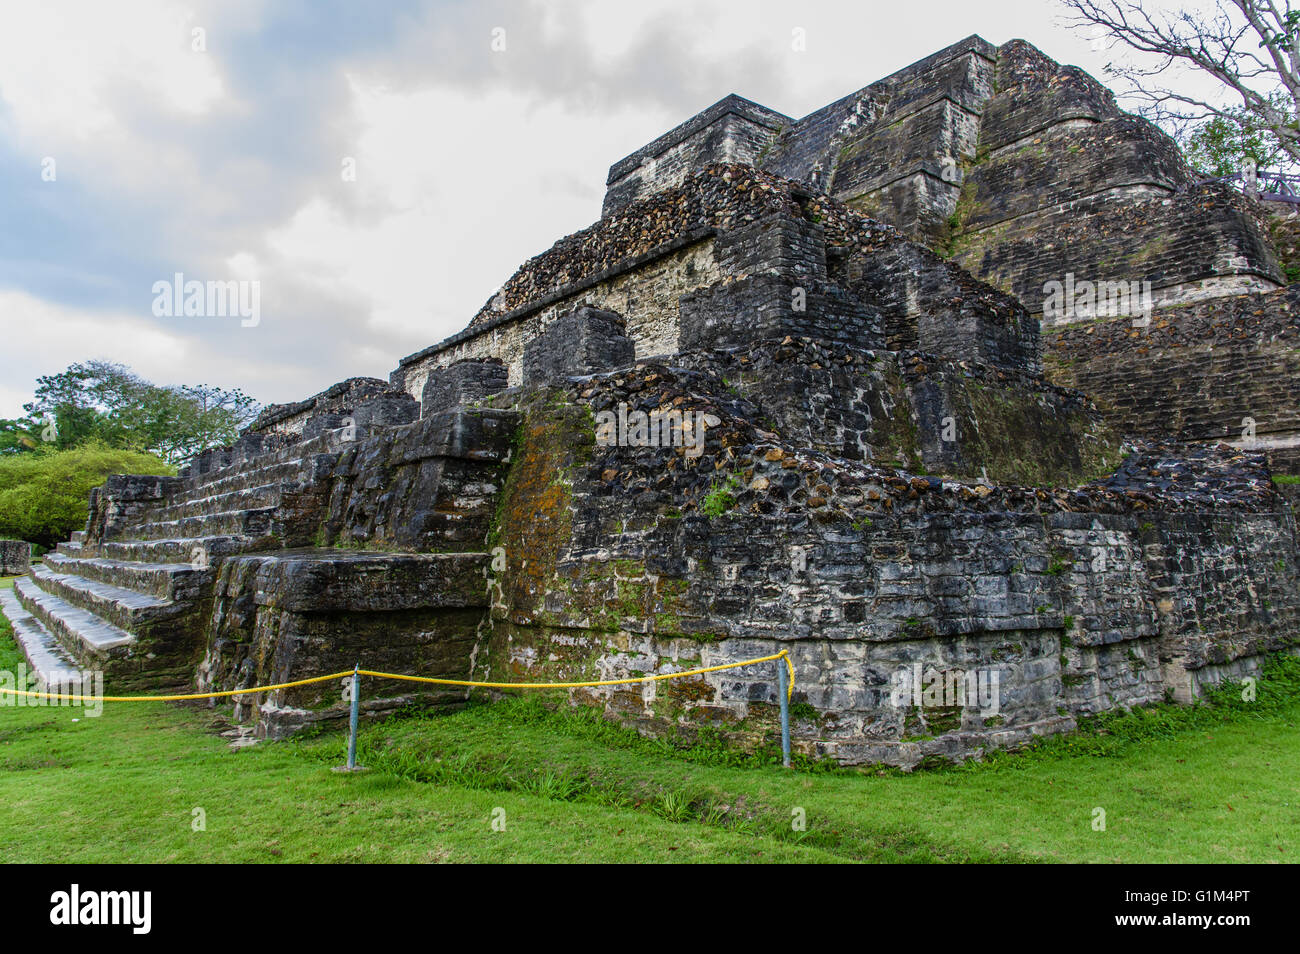 Tempio di altari in muratura o sito B4 da Plaza B. Altun ha luogo storico. Distretto del Belize, Belize Foto Stock